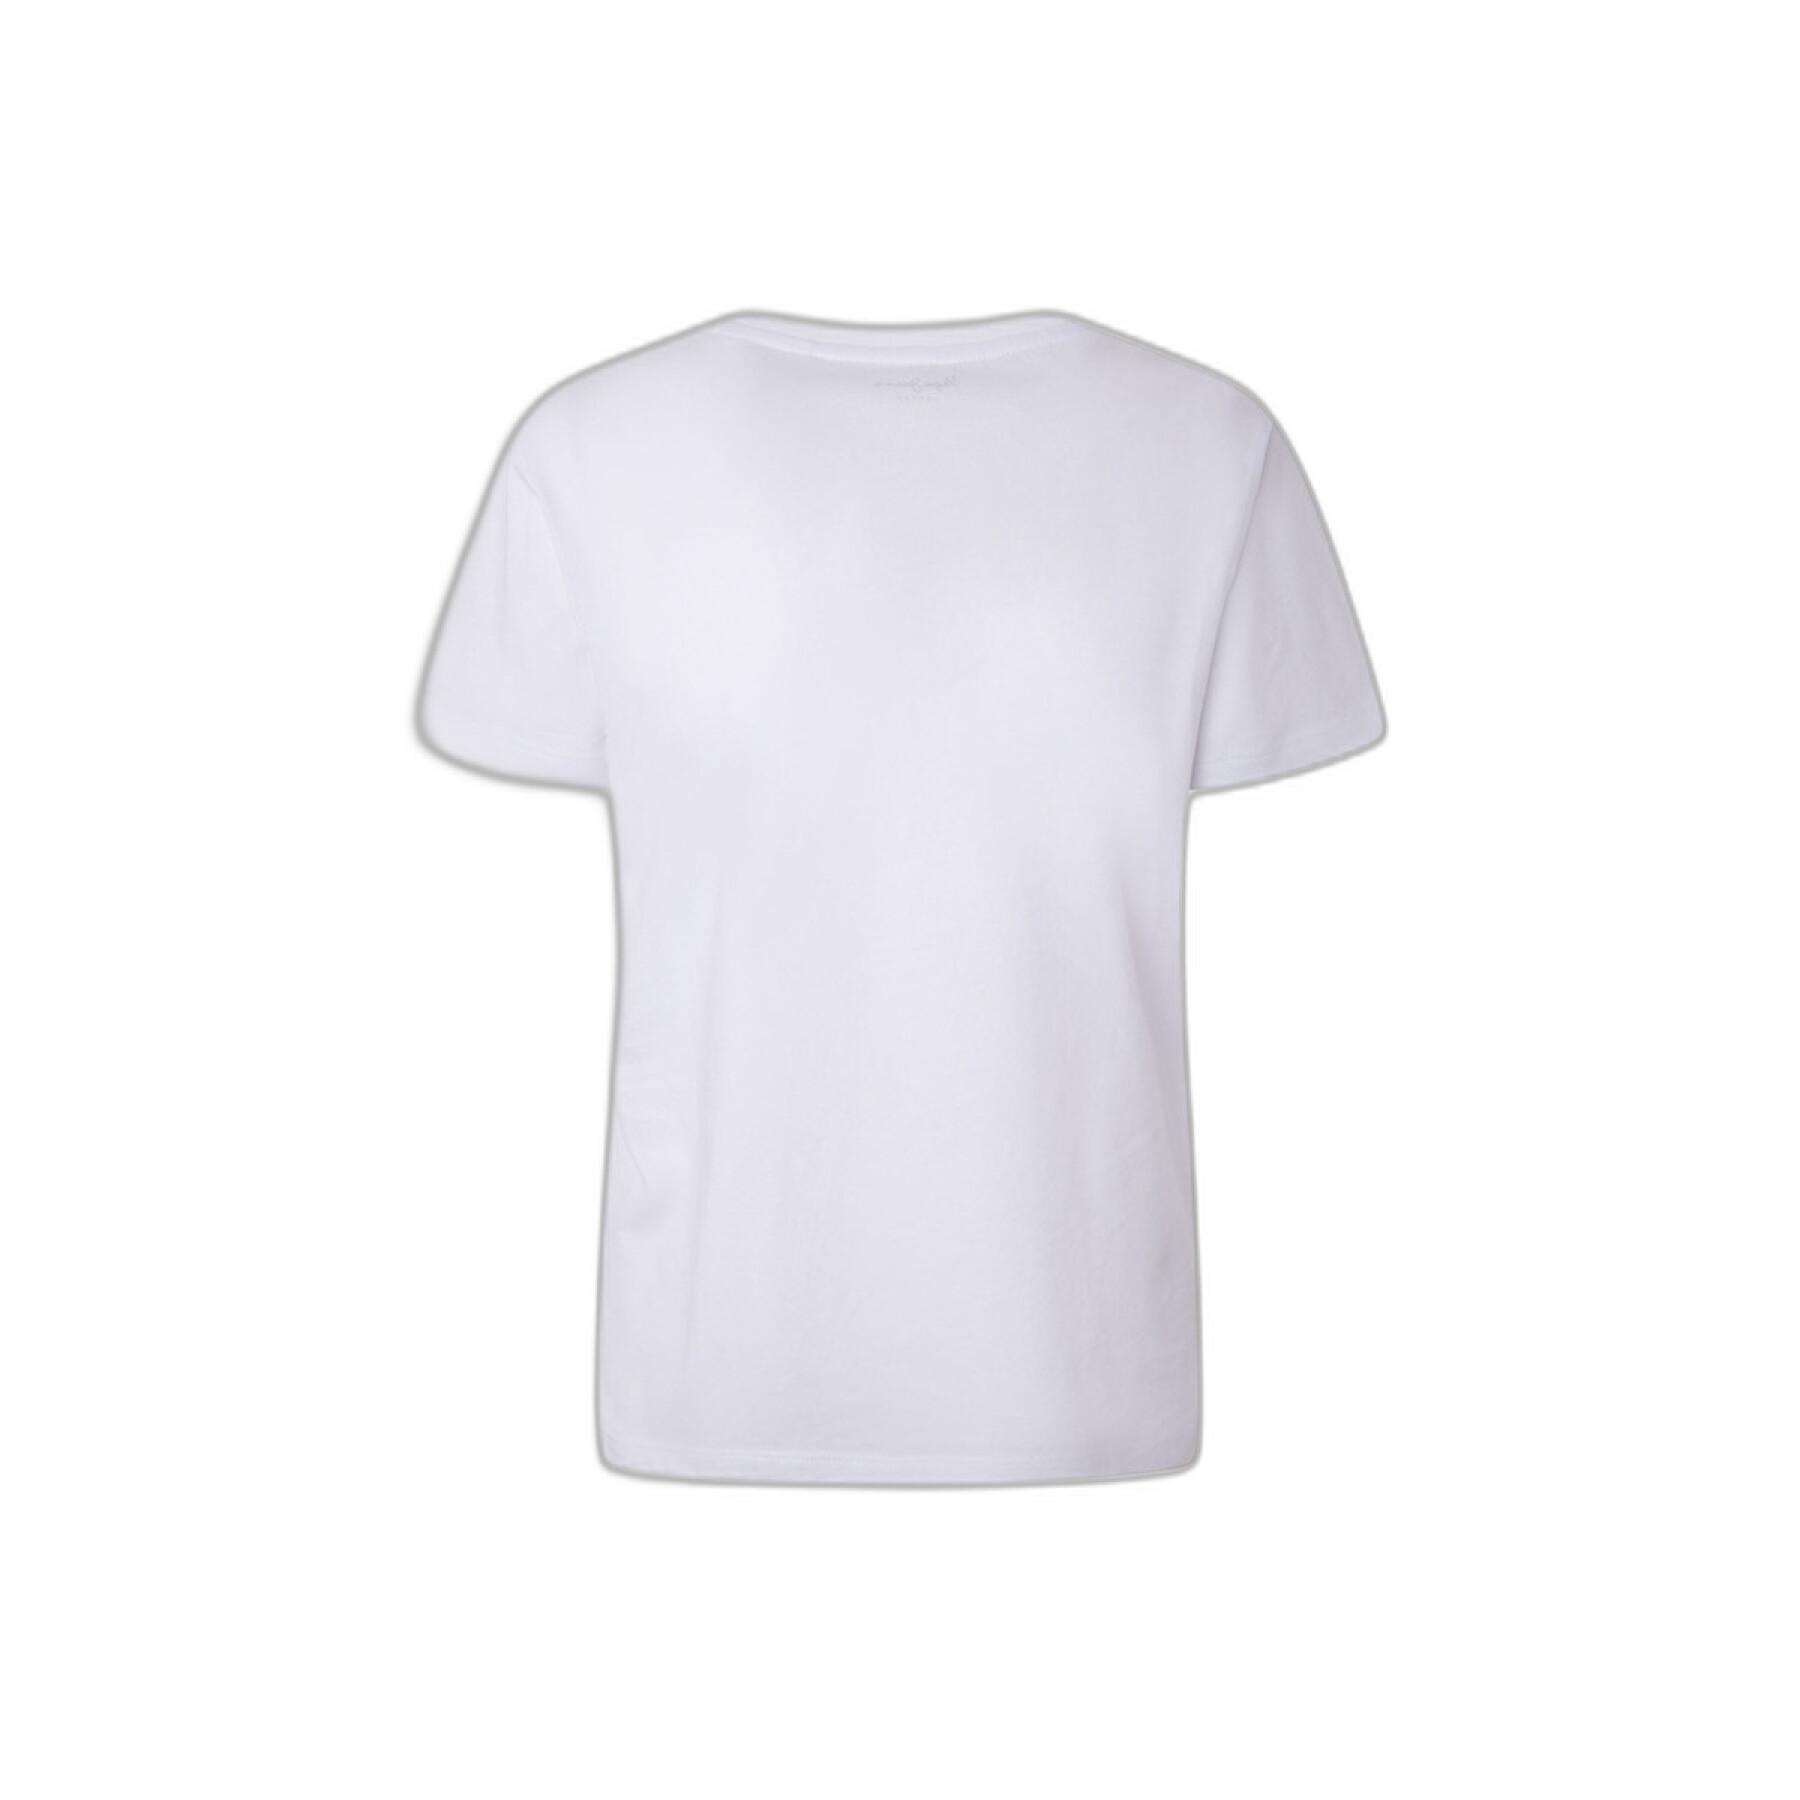 Women\'s T-shirt Pepe Jeans Lali - T-shirts & Tank Tops - Clothing - Women